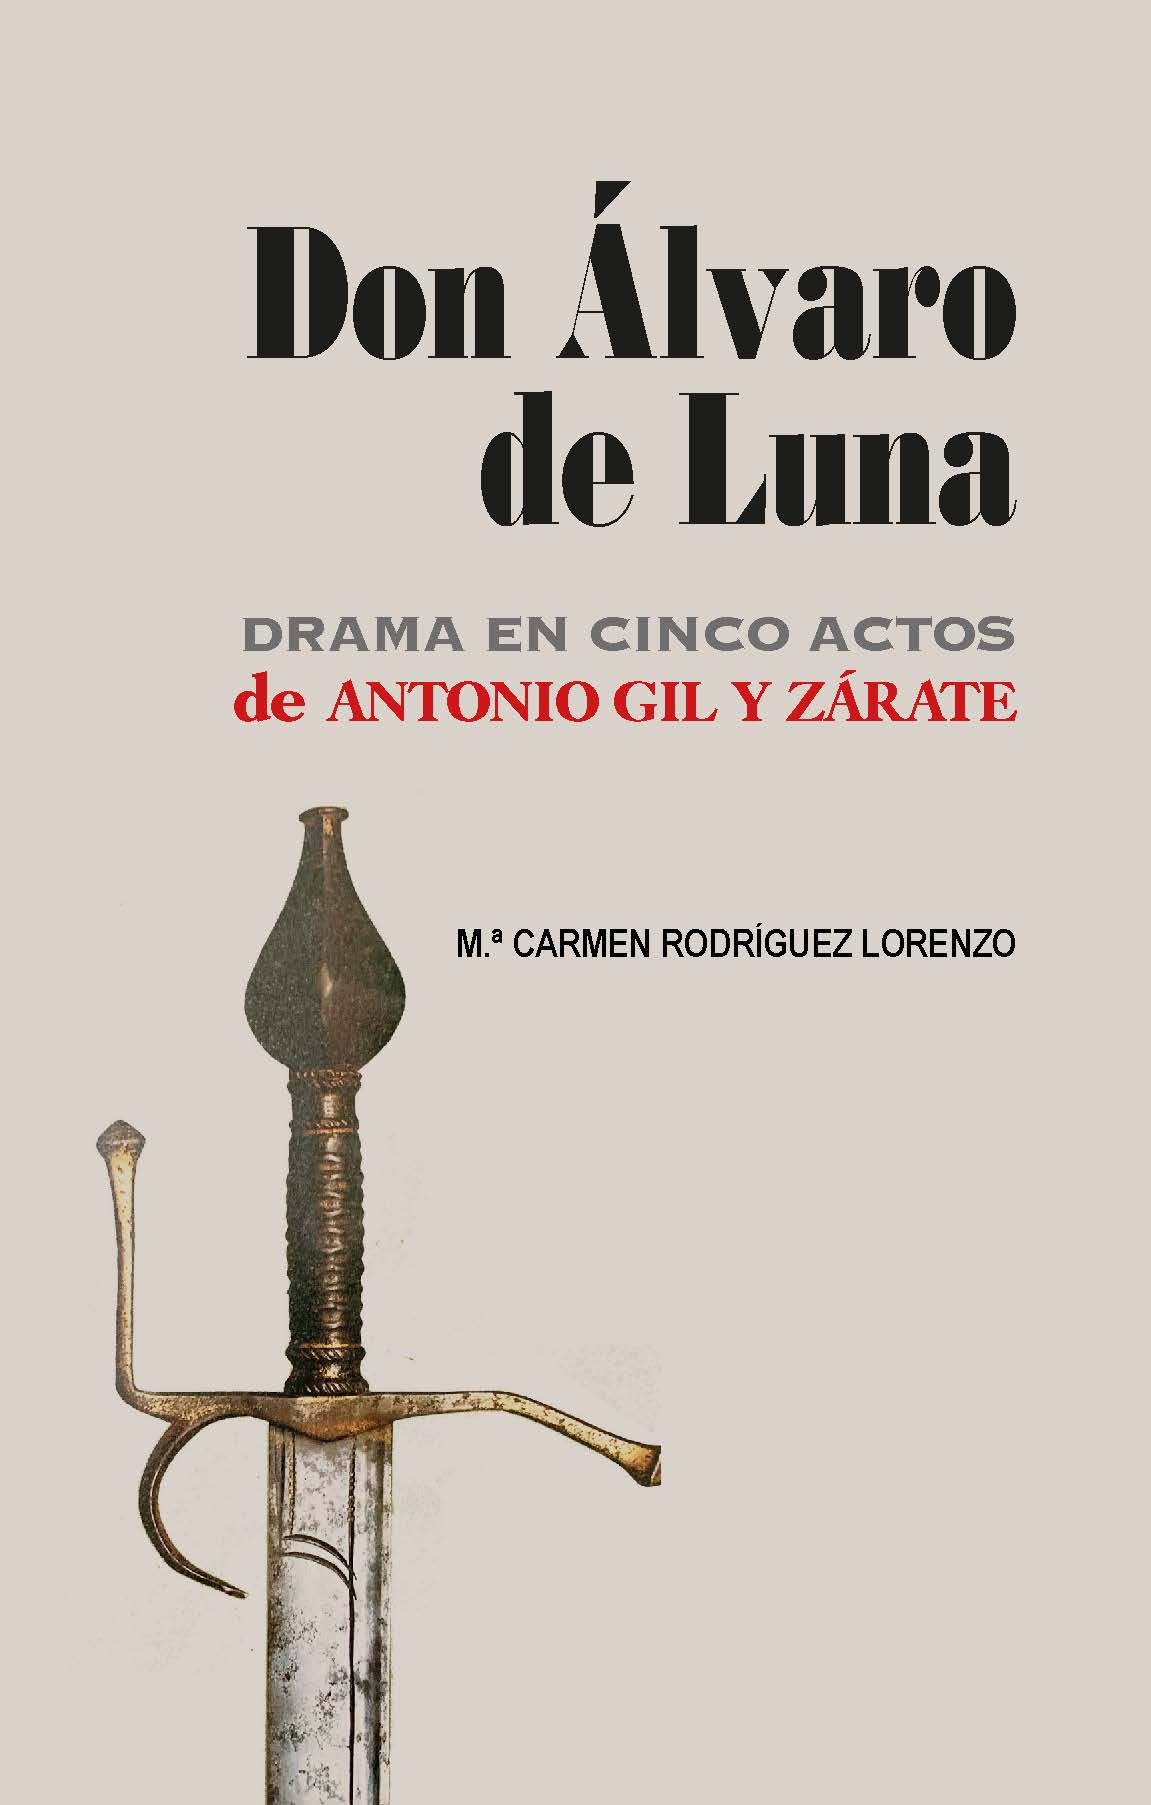 Don lvaro de Luna. Drama en cinco actos de Antonio Gil y Zrate